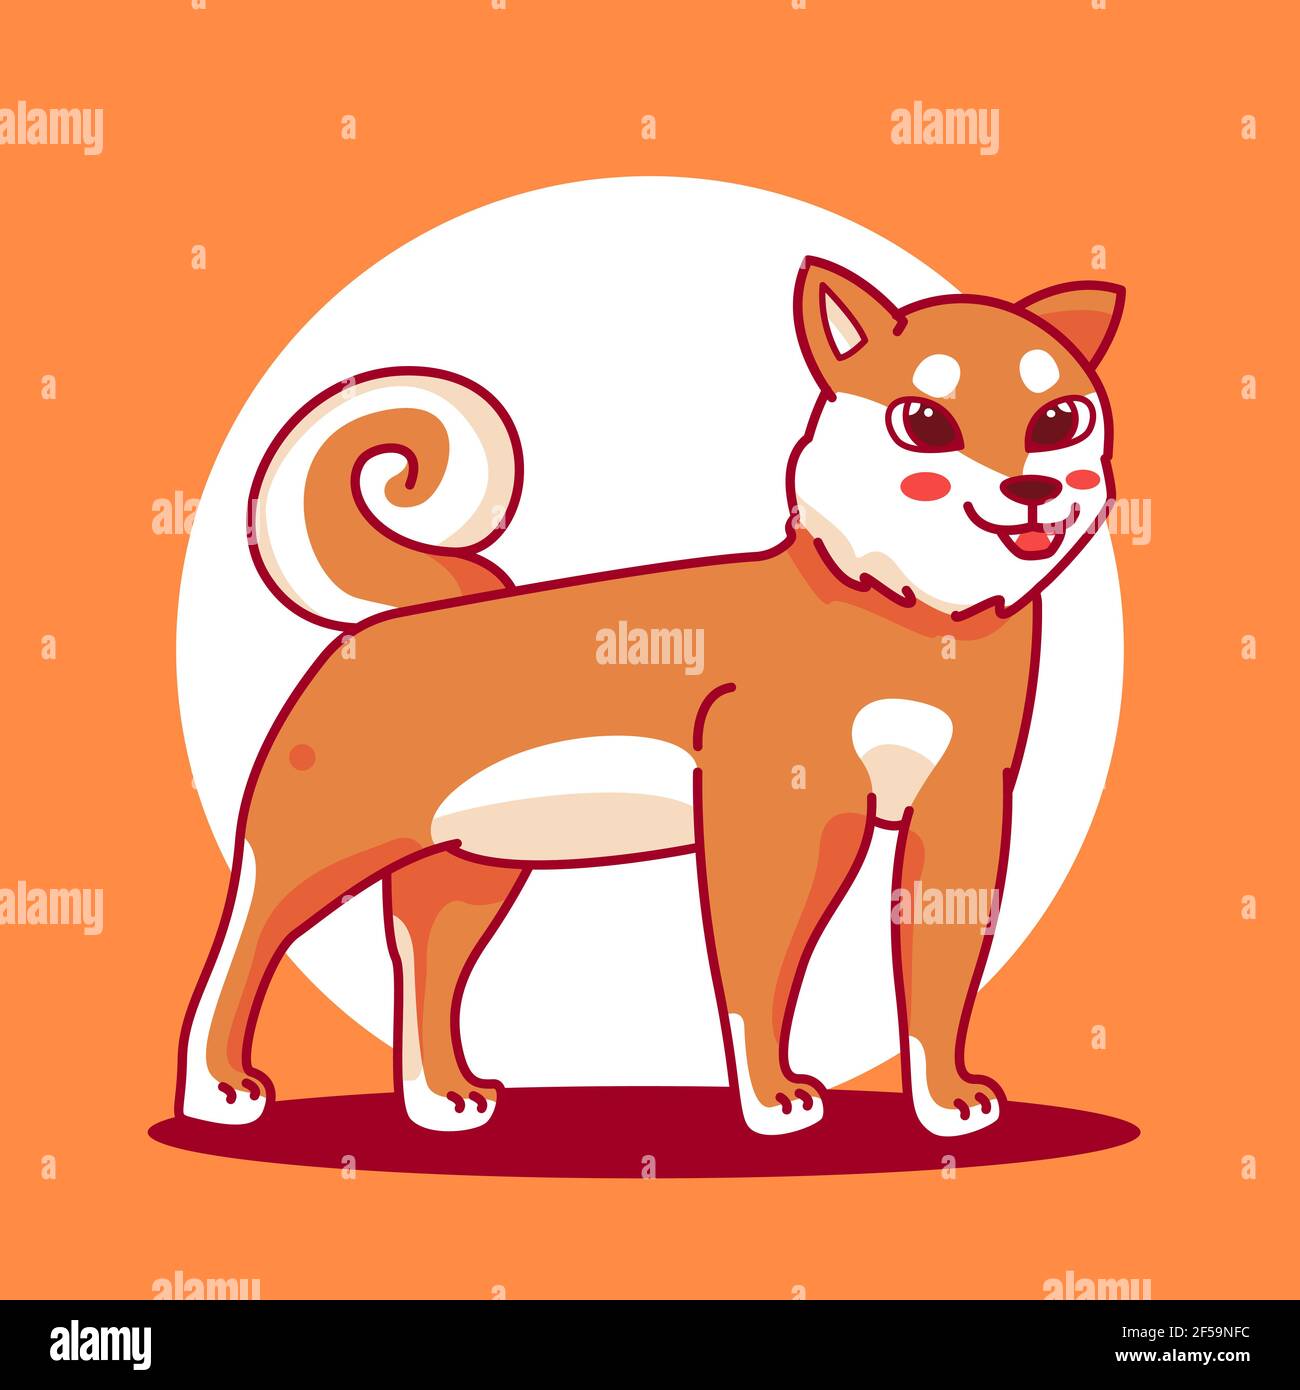 cartone animato shiba inu dog. premium vector design Illustrazione Vettoriale